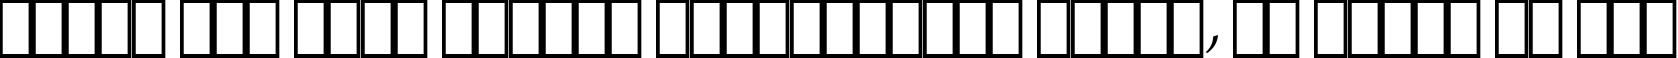 Пример написания шрифтом ITC Zapf Chancery Medium Italic текста на русском